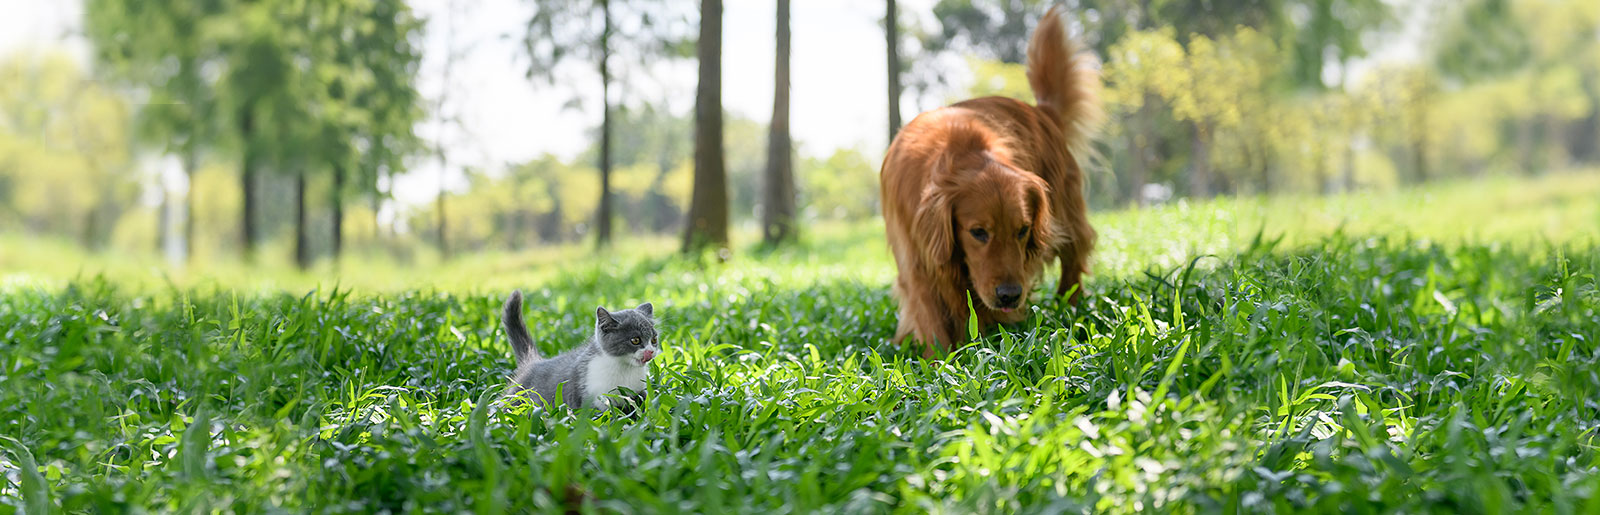 Zusammenführen und Zusammenleben von Katze und Hund